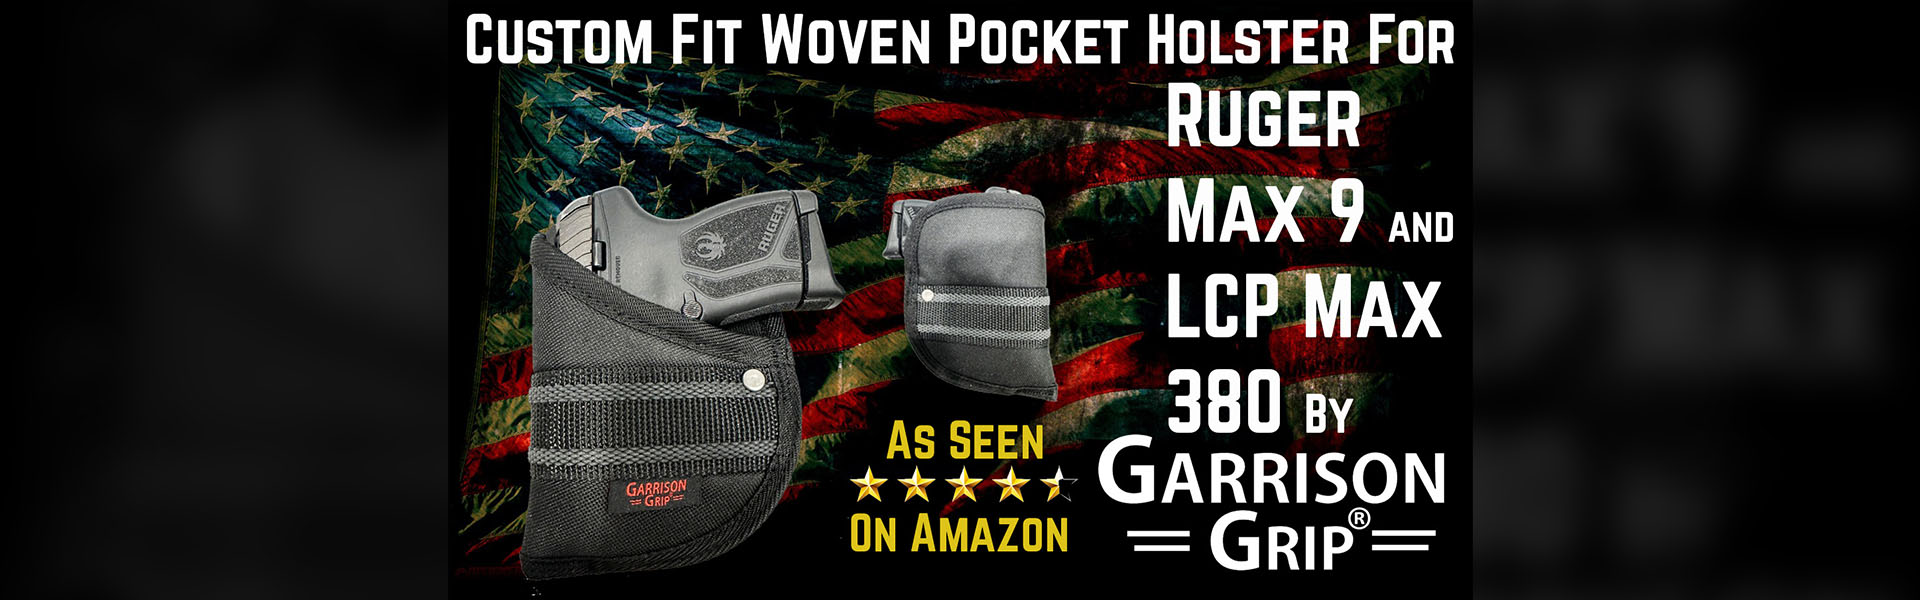 https://garrisongrip.com/--custom-fit-woven-pocket-holsters/